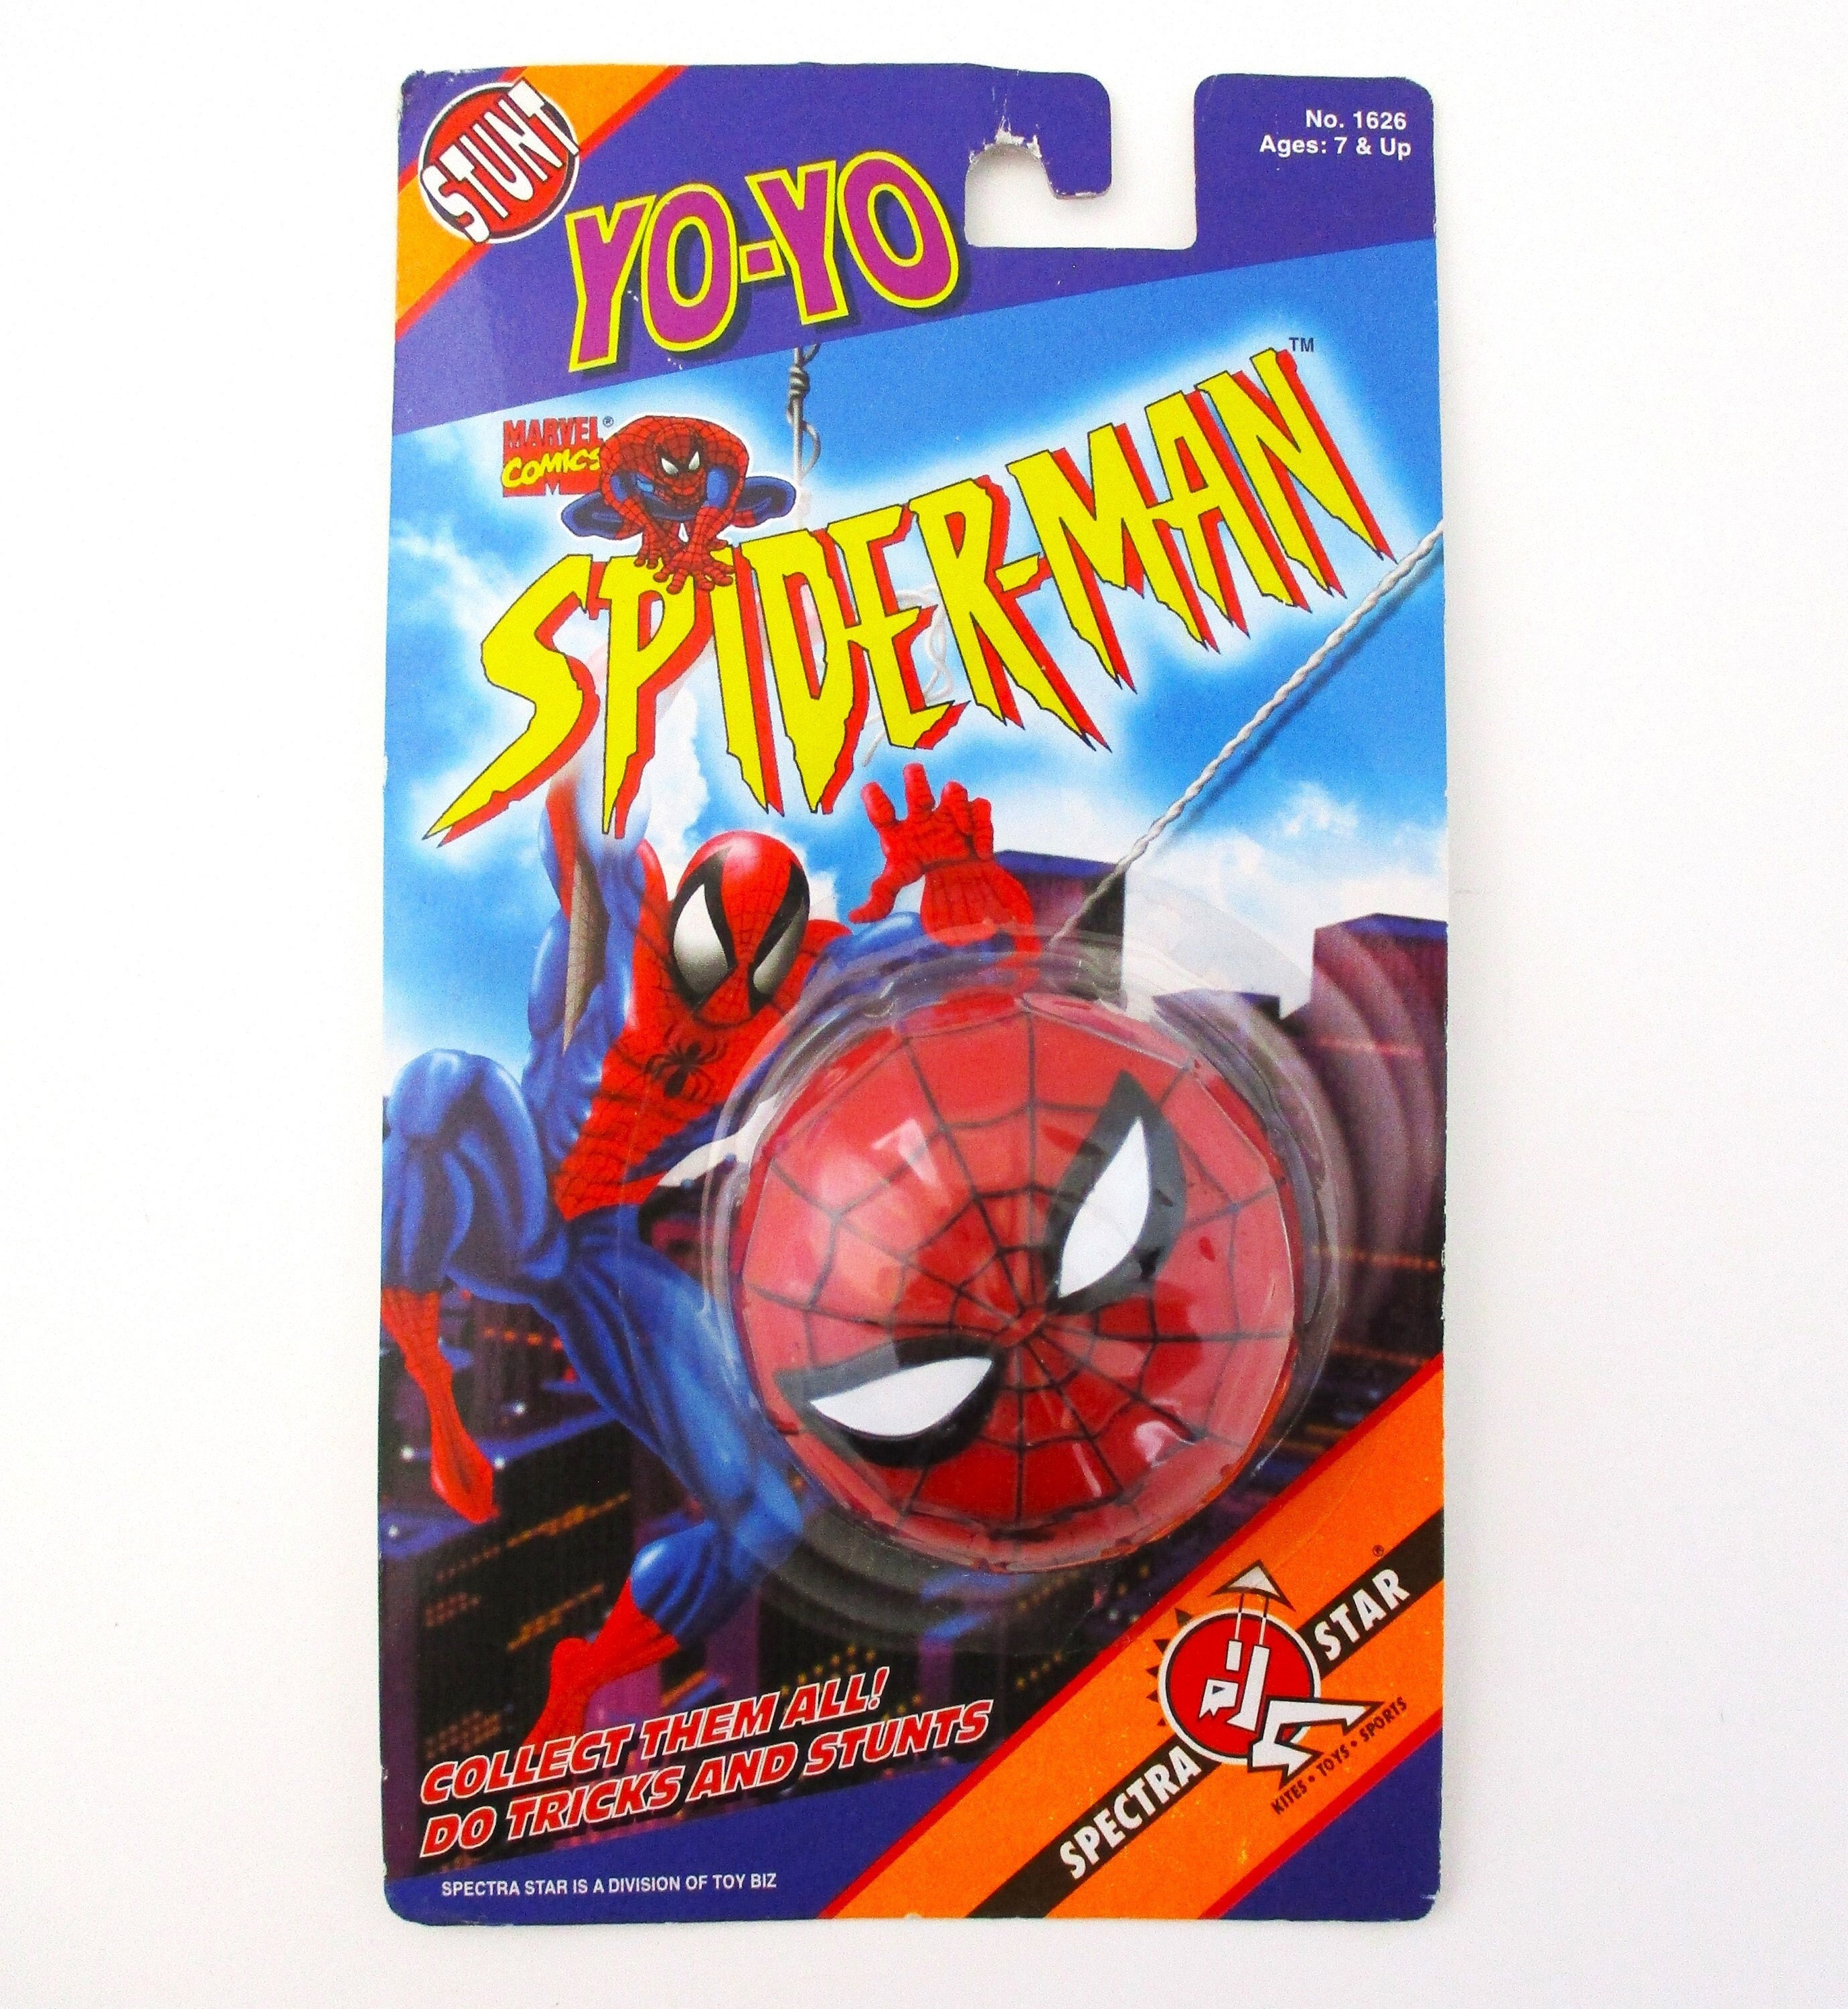 Yoyo Spiderman jouet enfant yo-yo - cour-recreation